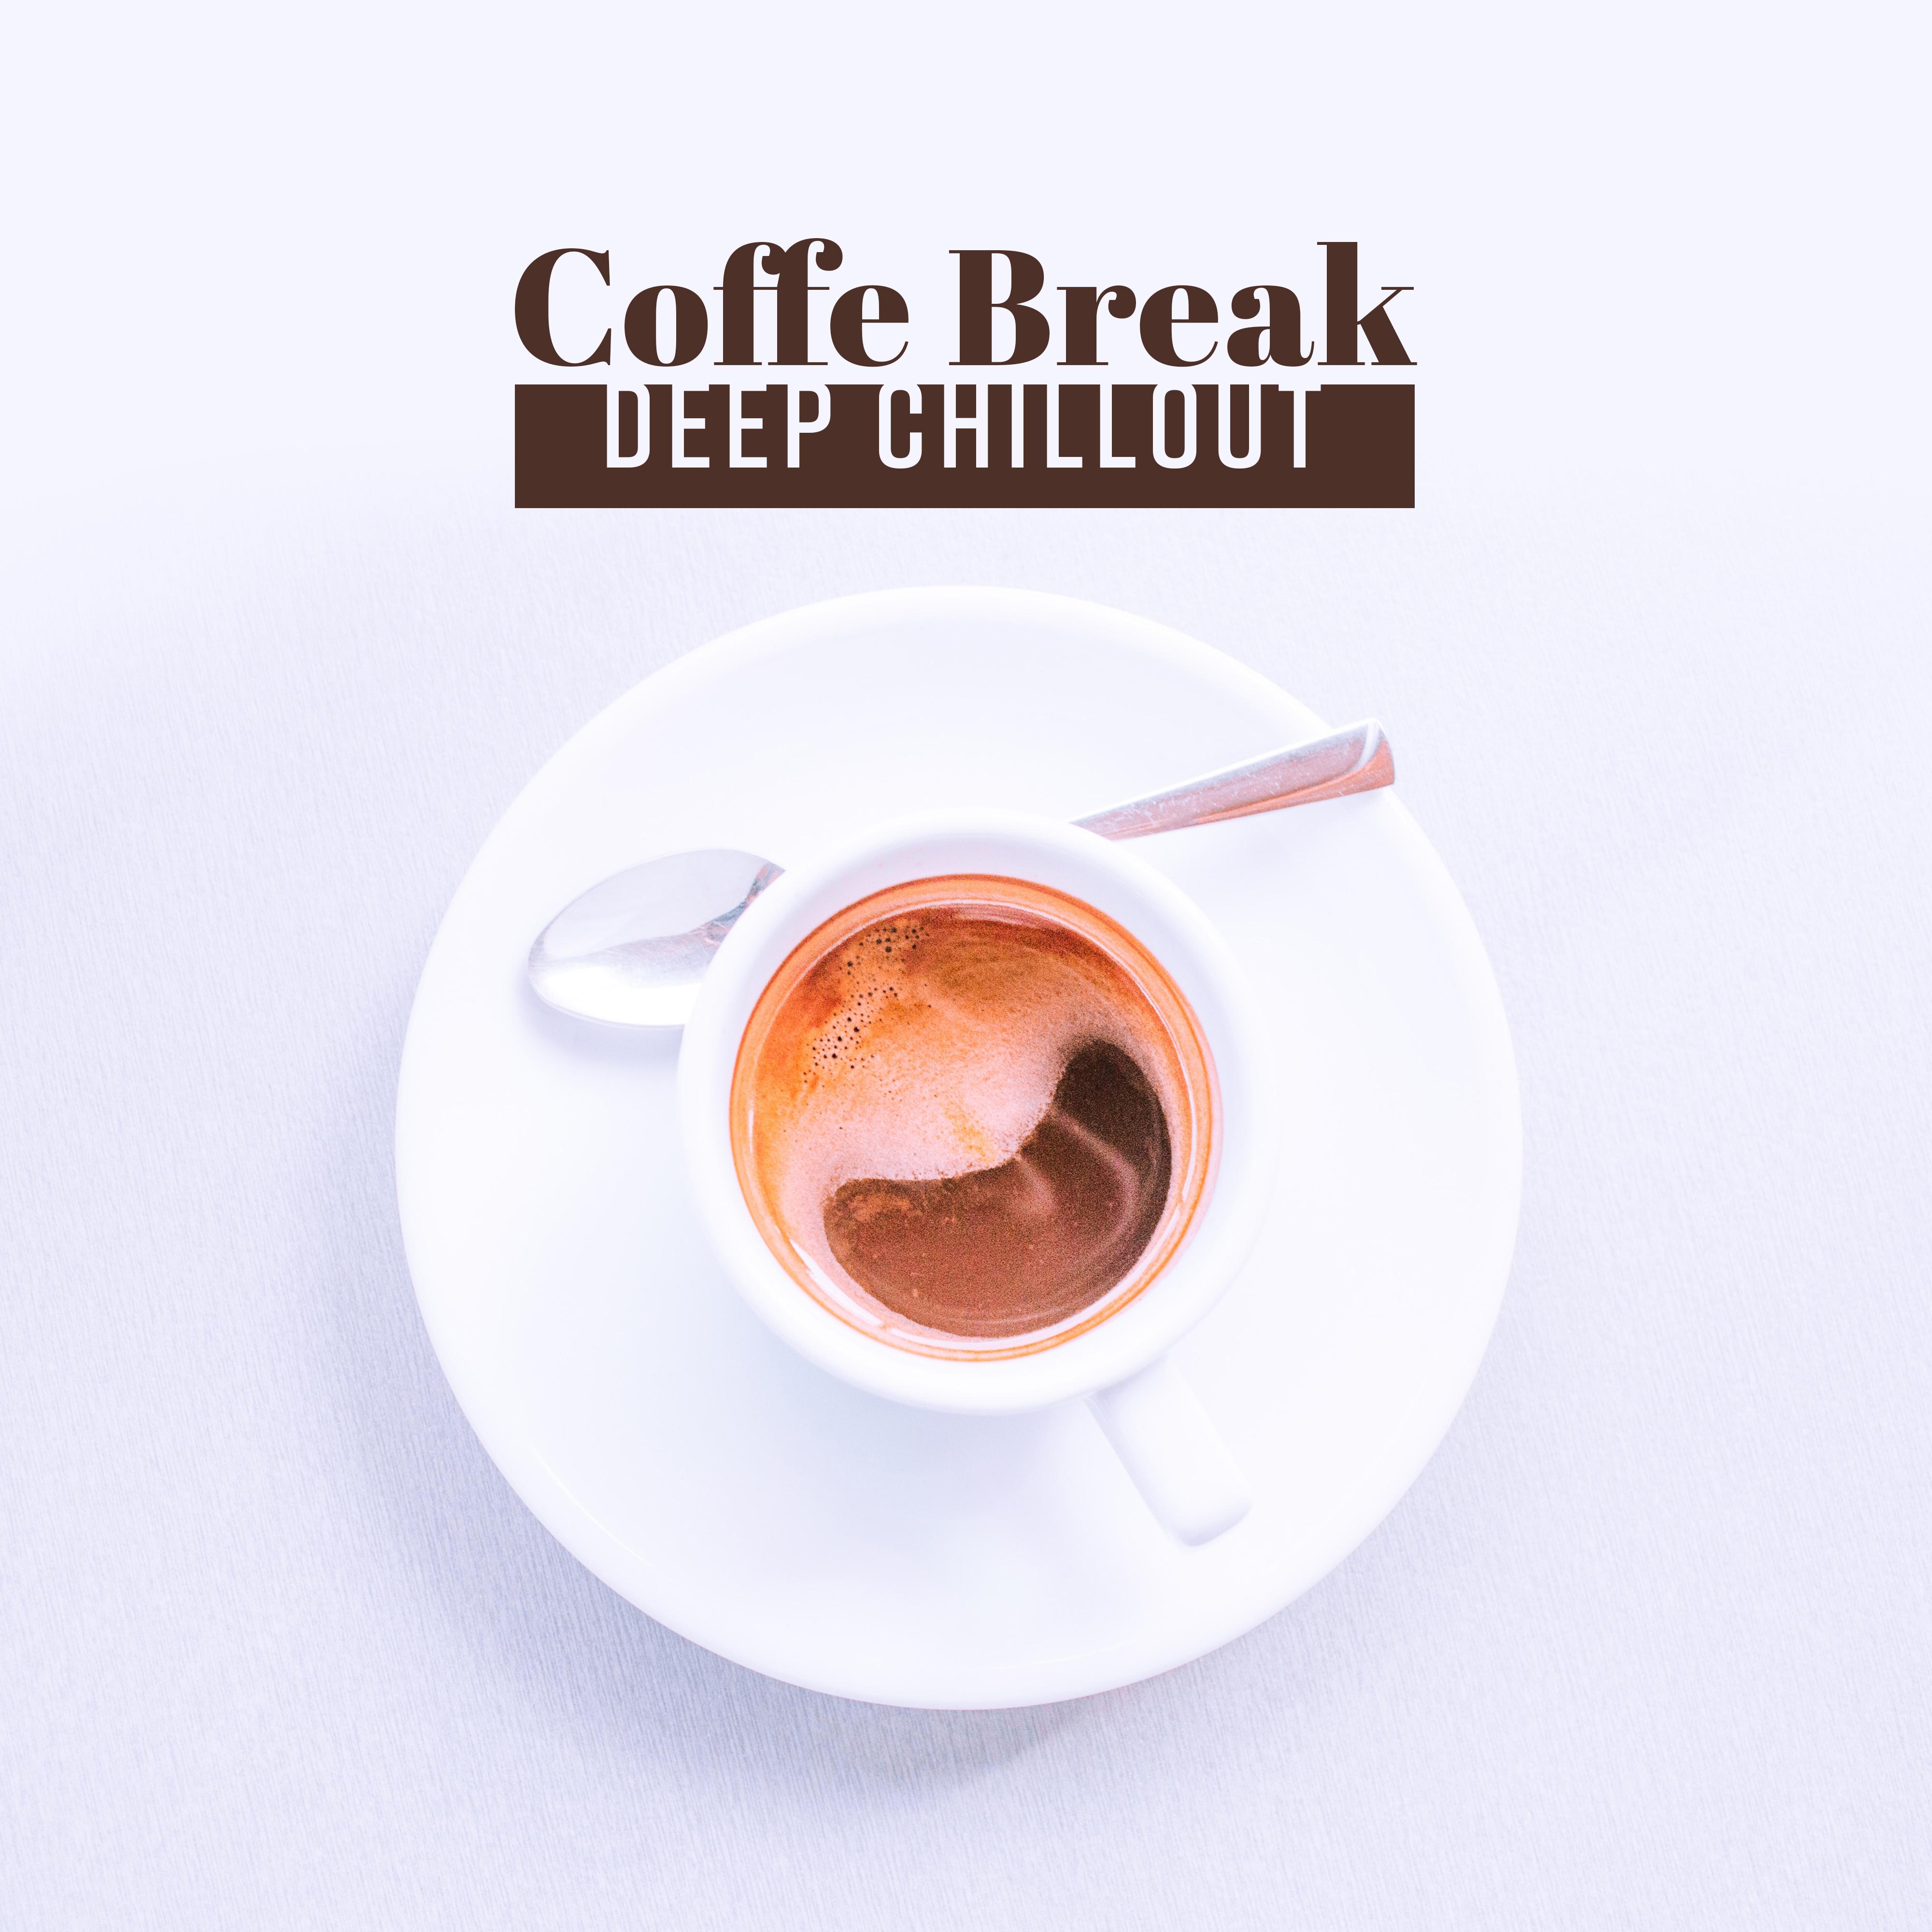 Coffe Break: Deep Chillout